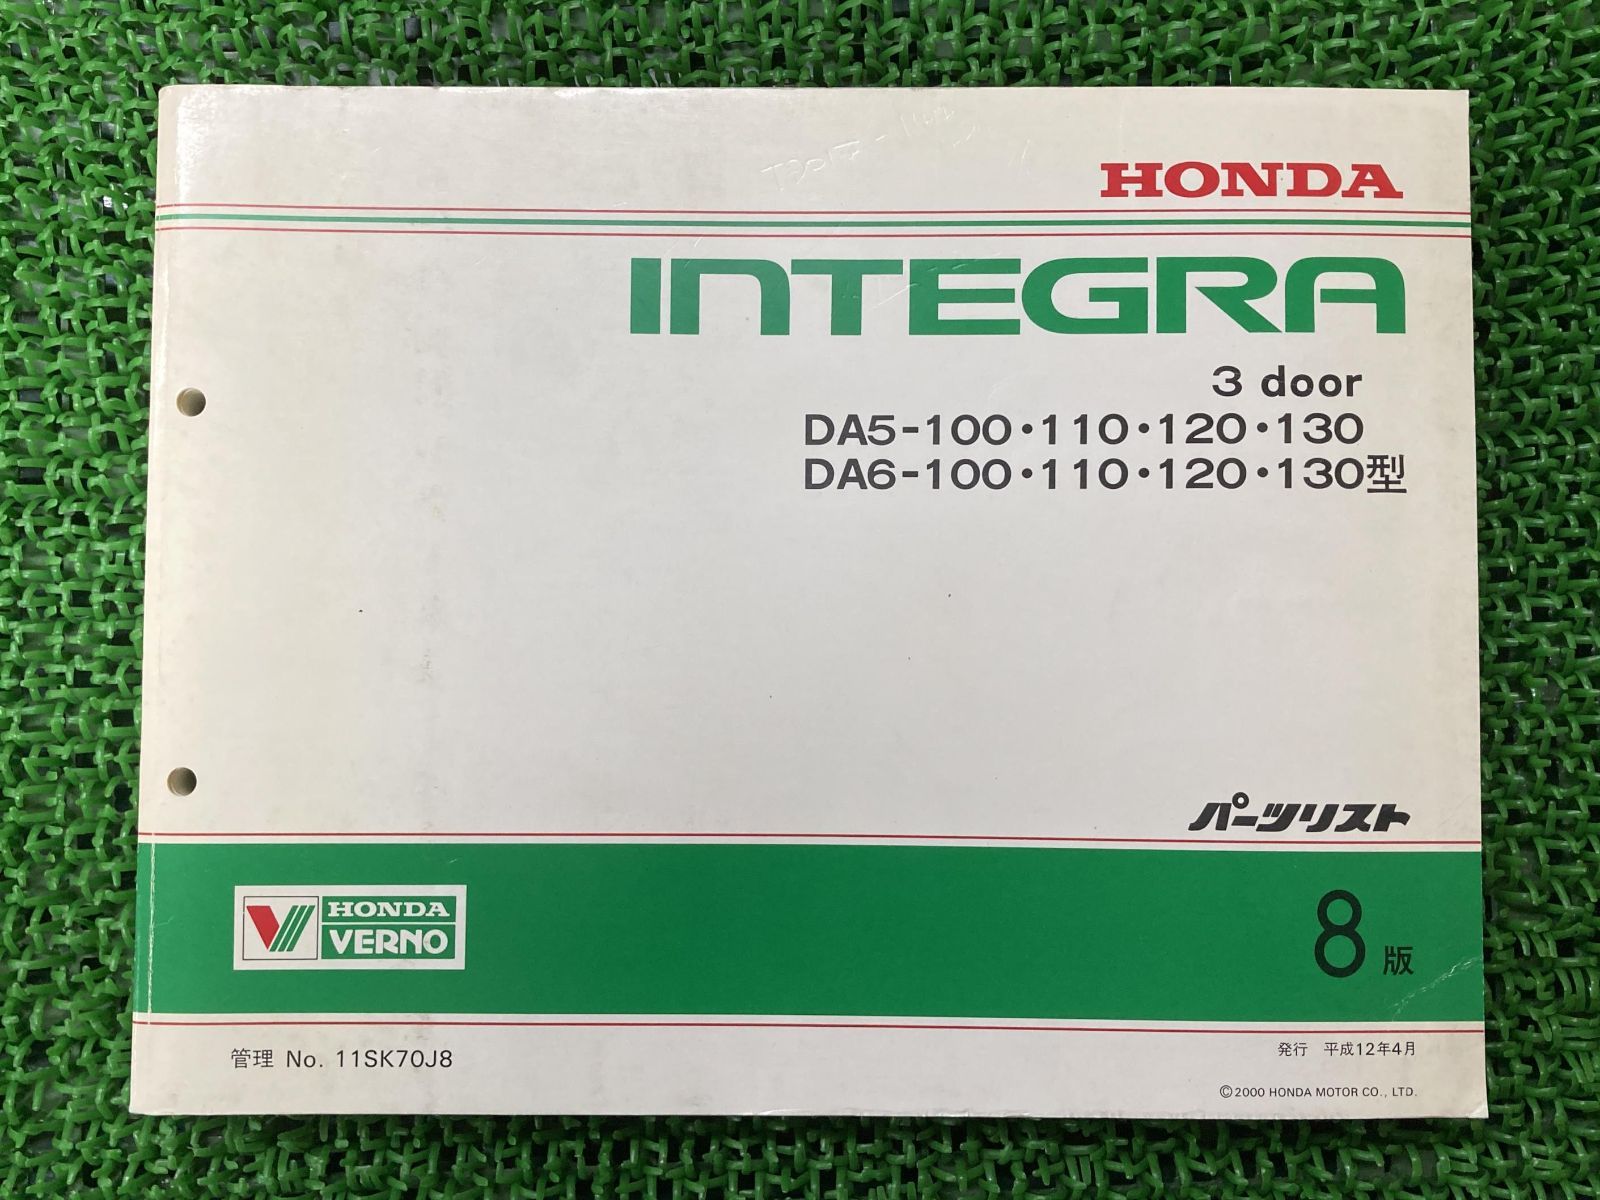 インテグラ INTEGRA 3ドア 3door パーツリスト 8版 ホンダ 正規 中古 バイク 整備書 DA5-100・110・120・130  DA6-100・110・120・130